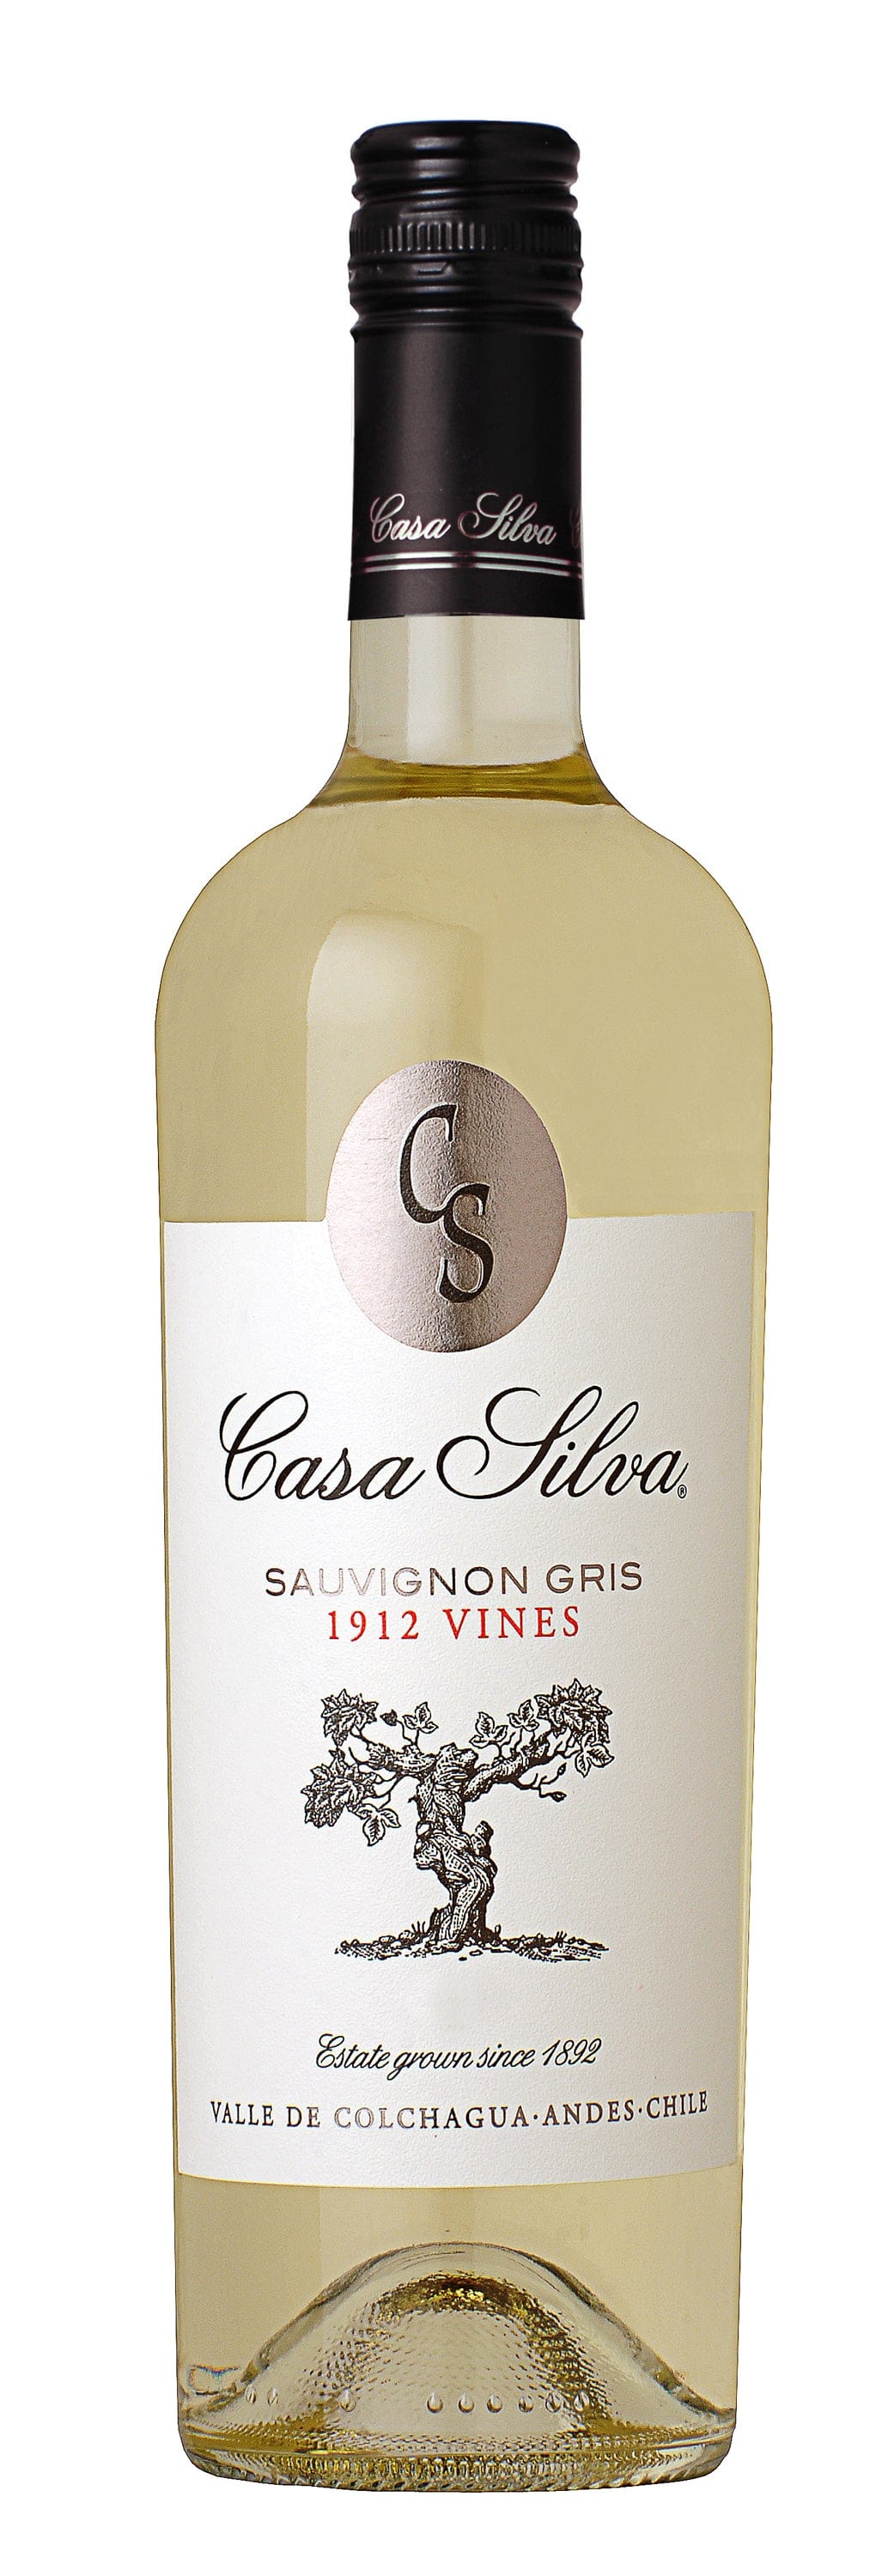 Wine Casa Silva 1912 Vines Sauvignon Gris Colchagua Valley